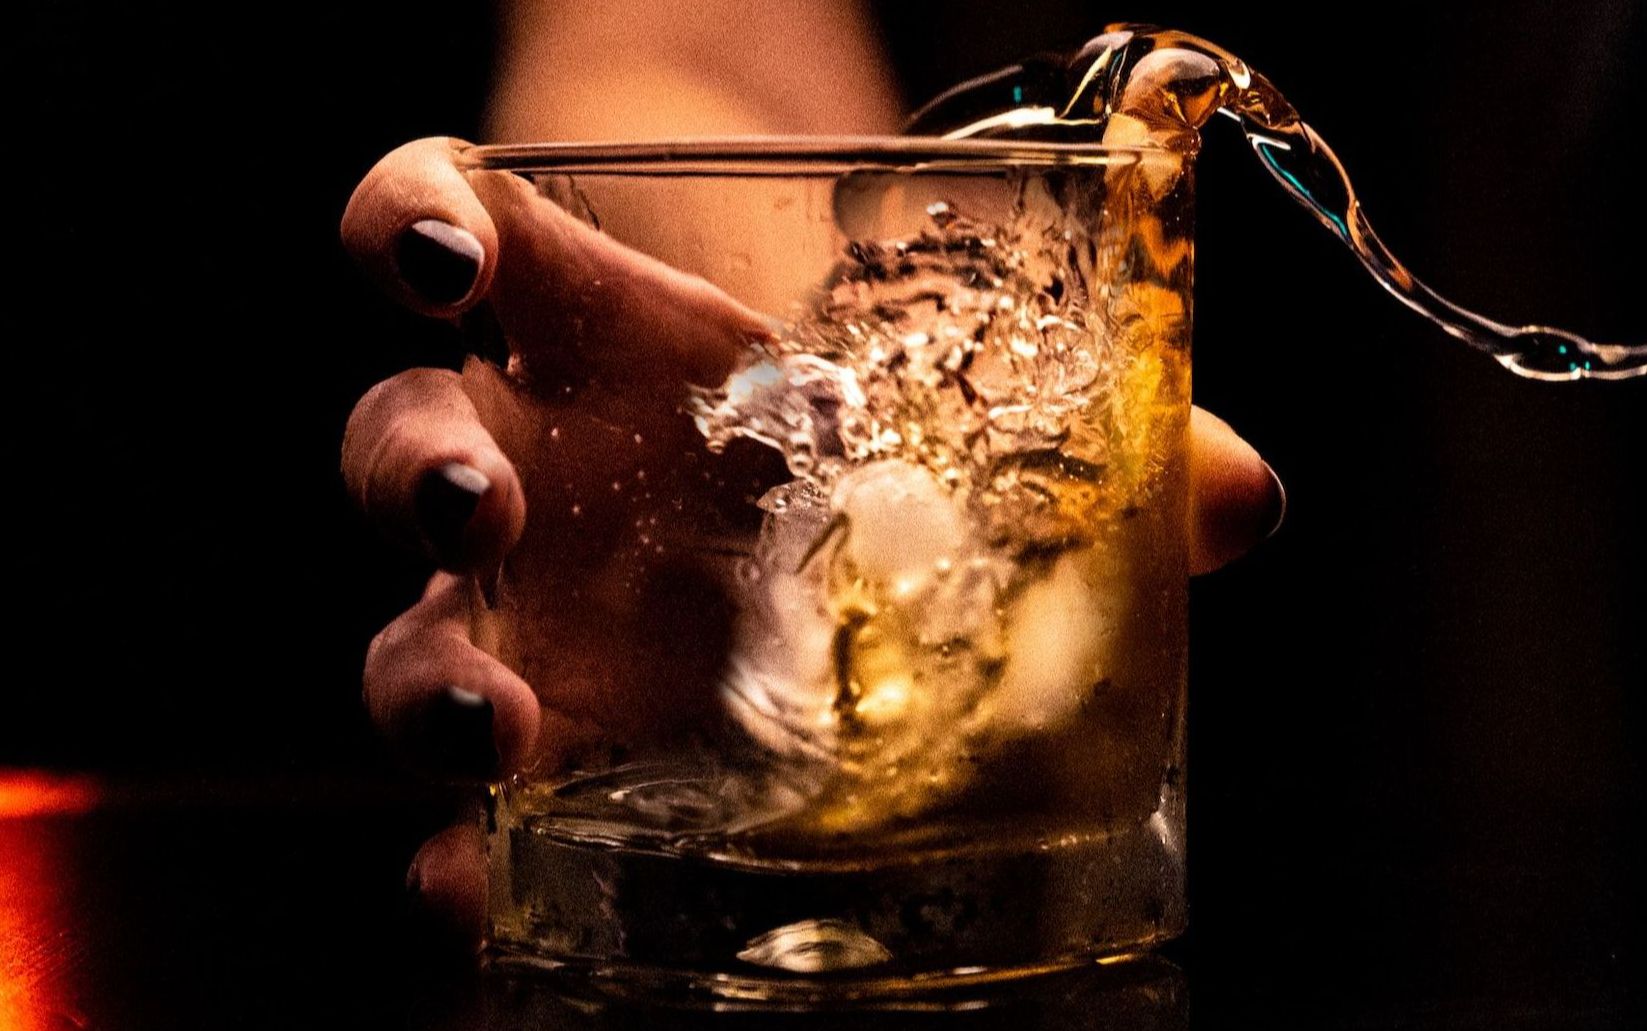 la consommation d'alcool excessive est dangereuse, un sevrage en 6 étapes vous permet d'arrêter de boire